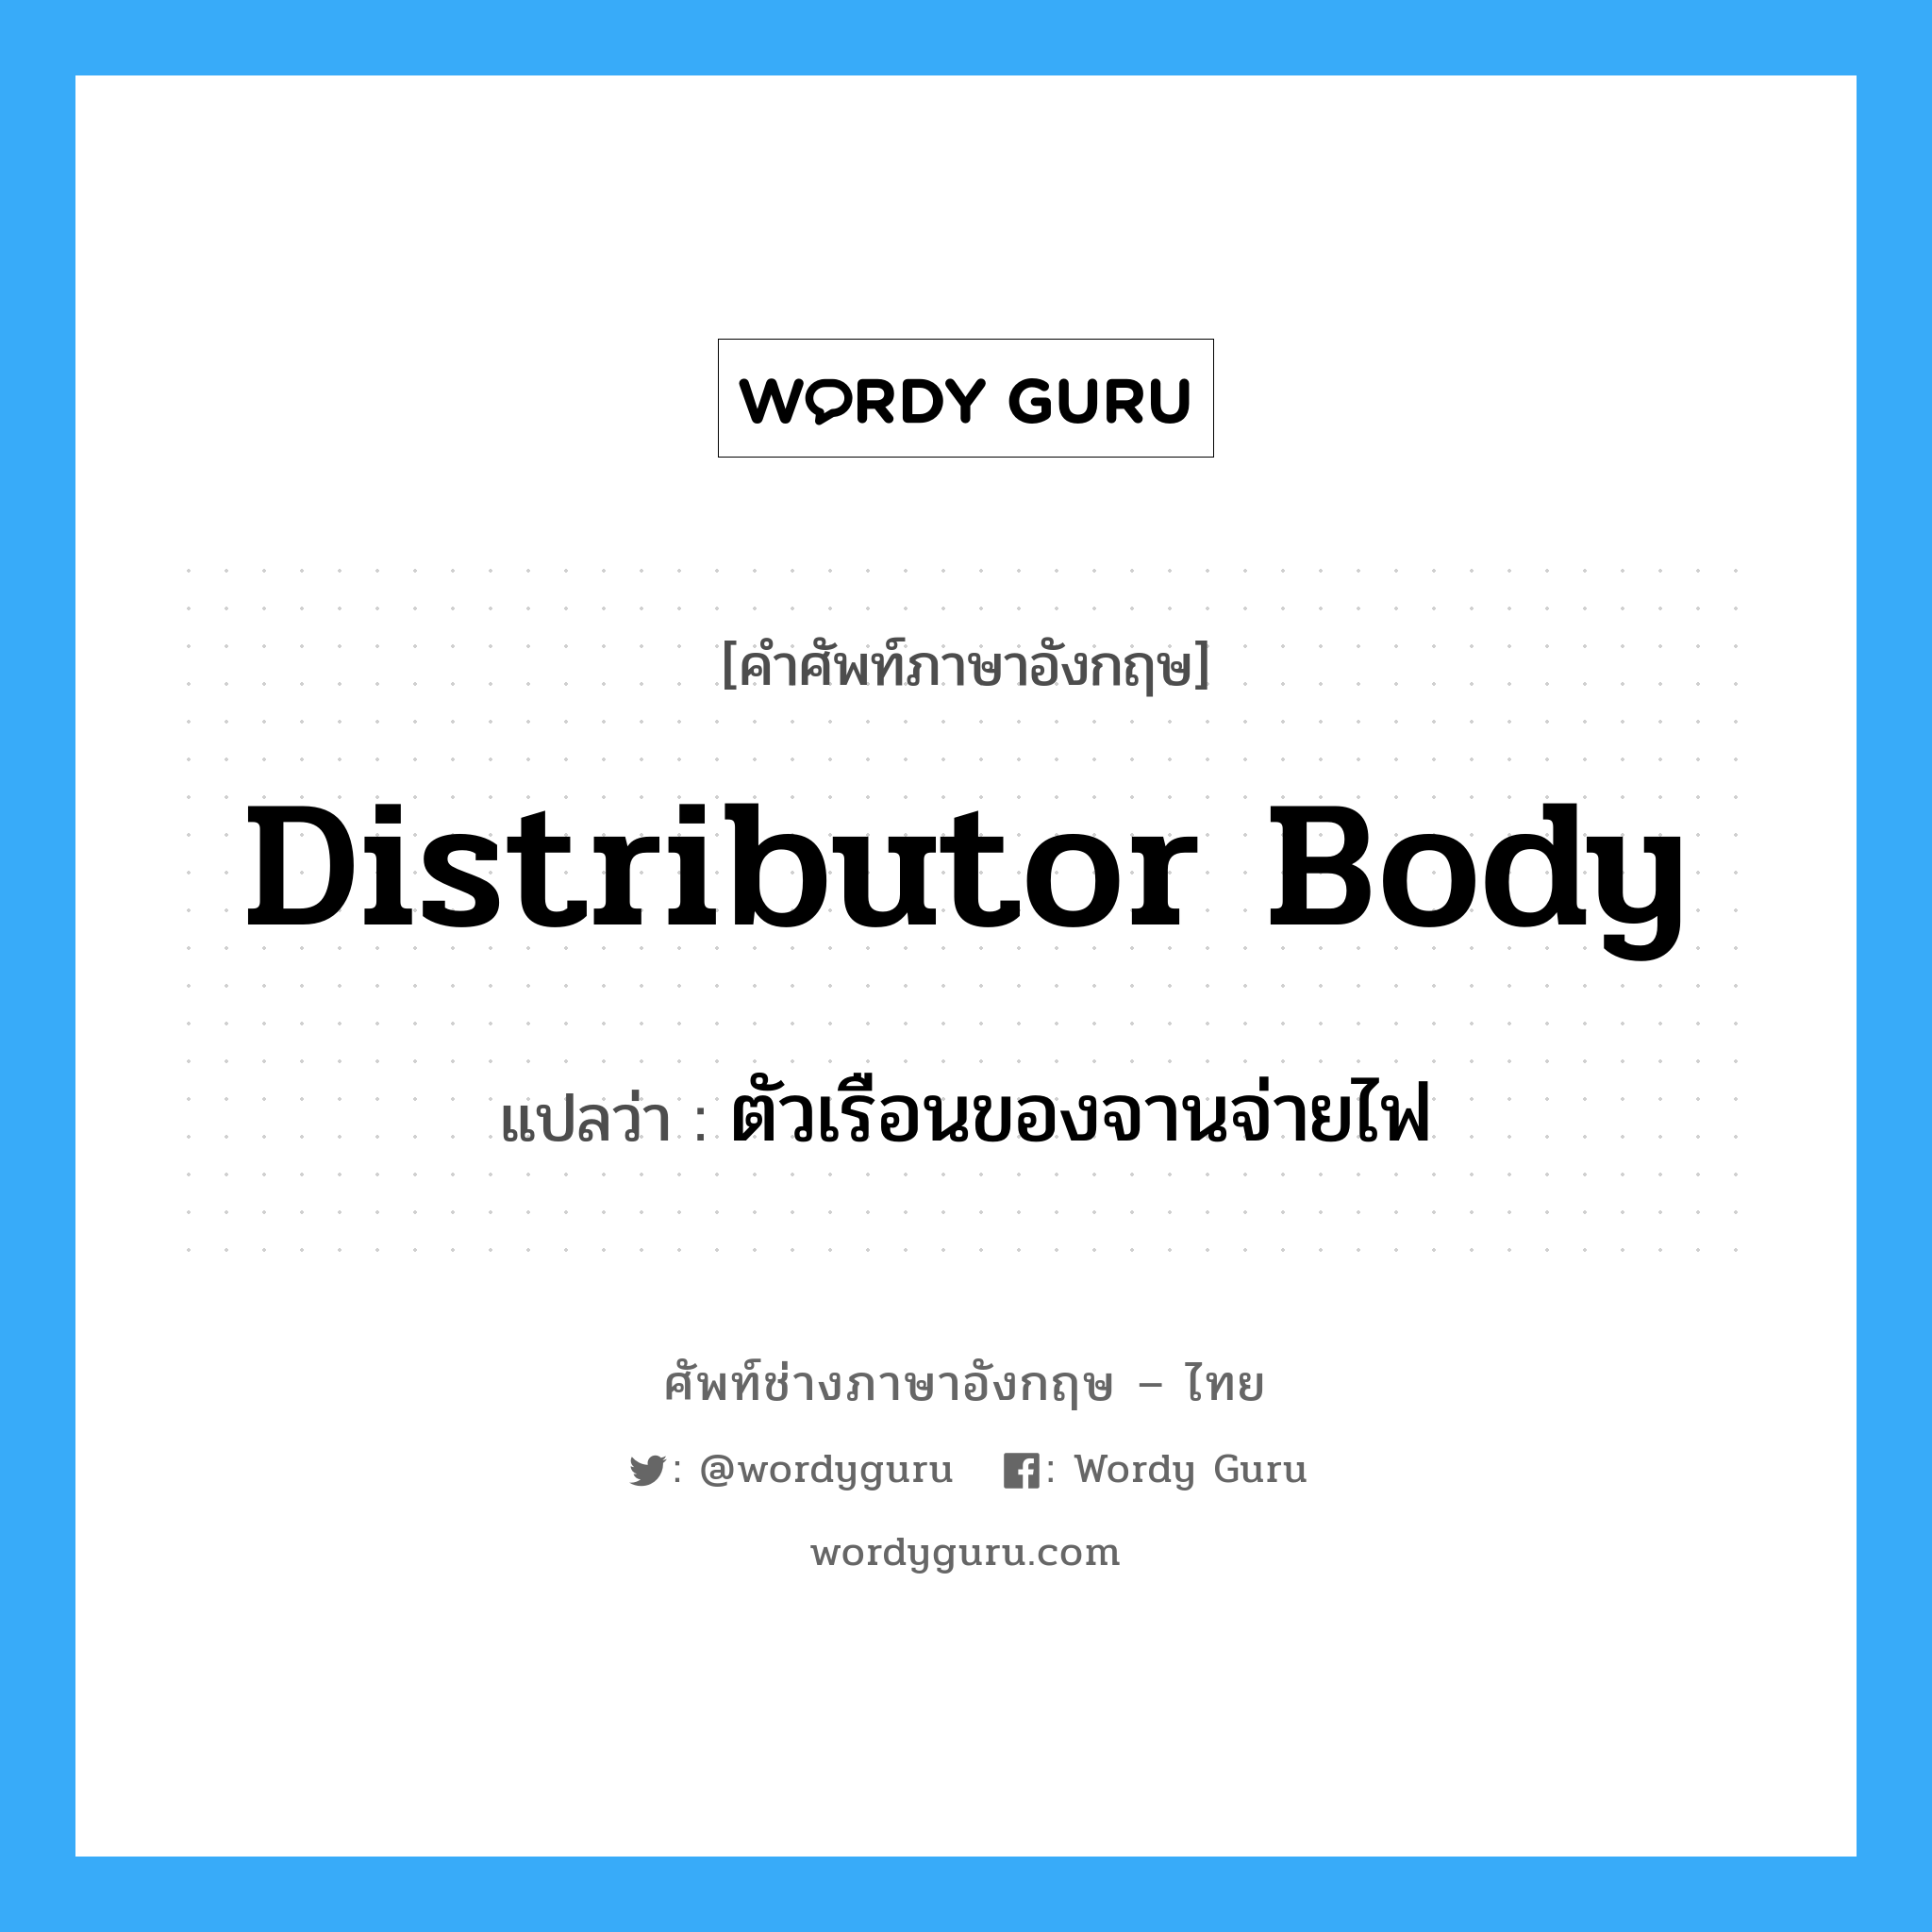 distributor body แปลว่า?, คำศัพท์ช่างภาษาอังกฤษ - ไทย distributor body คำศัพท์ภาษาอังกฤษ distributor body แปลว่า ตัวเรือนของจานจ่ายไฟ